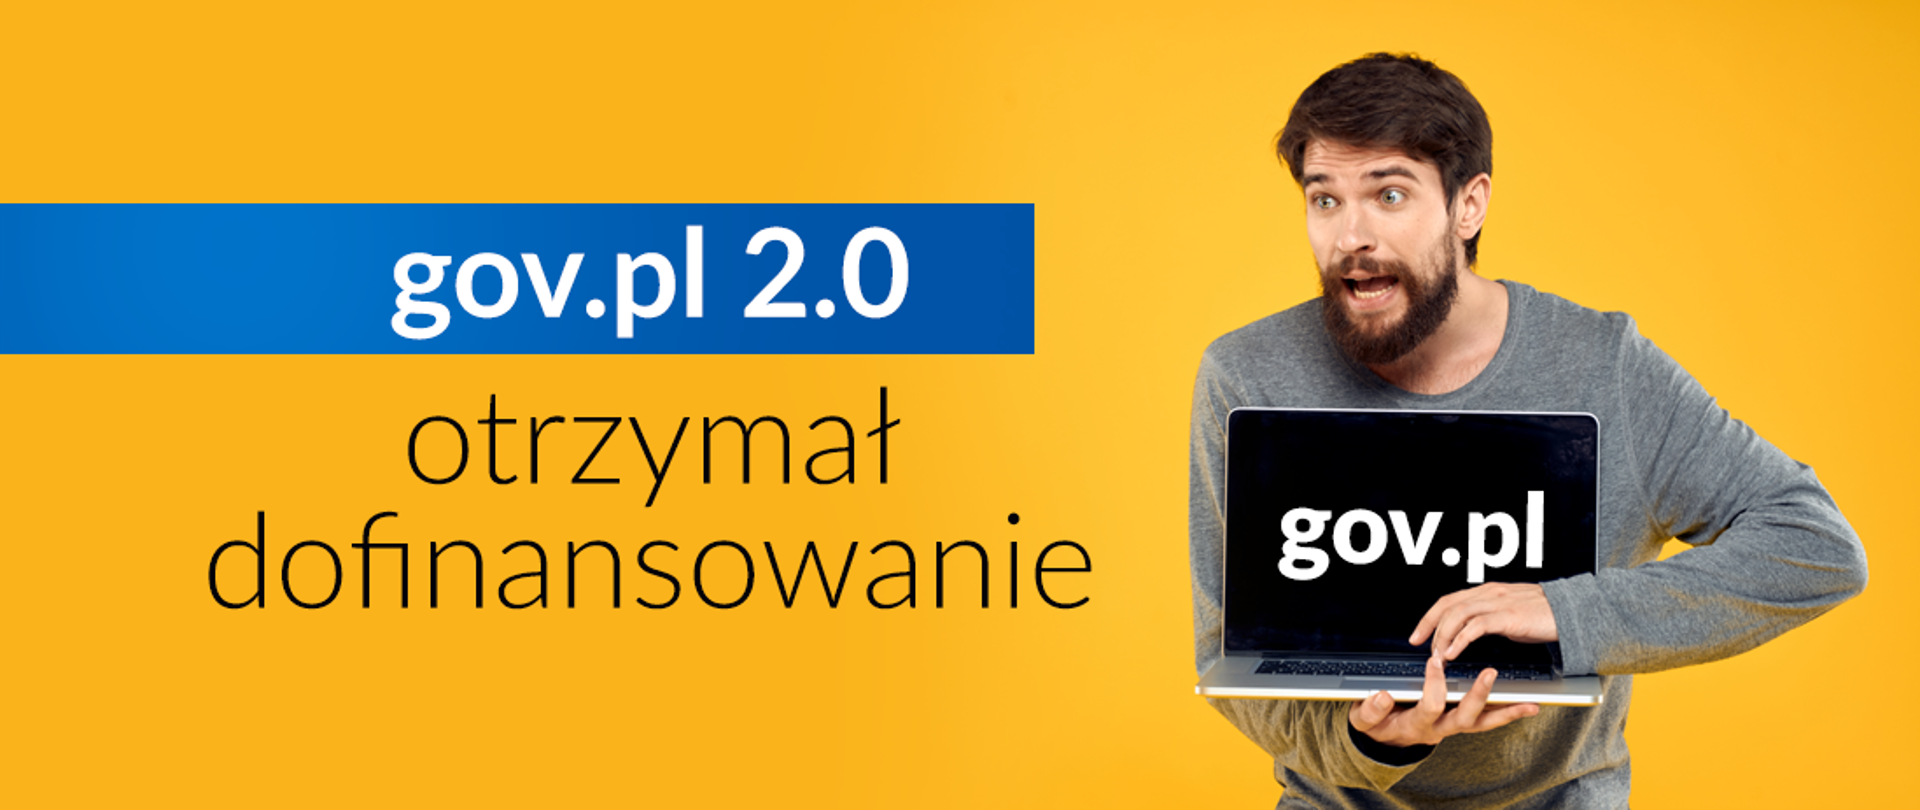 Baner o treści: gov.pl 2.0 orzynał dofinansowanie. Mężczyzna trzyma otwarty laptop. Na pulpicie laptopa napis o treści: gov.pl